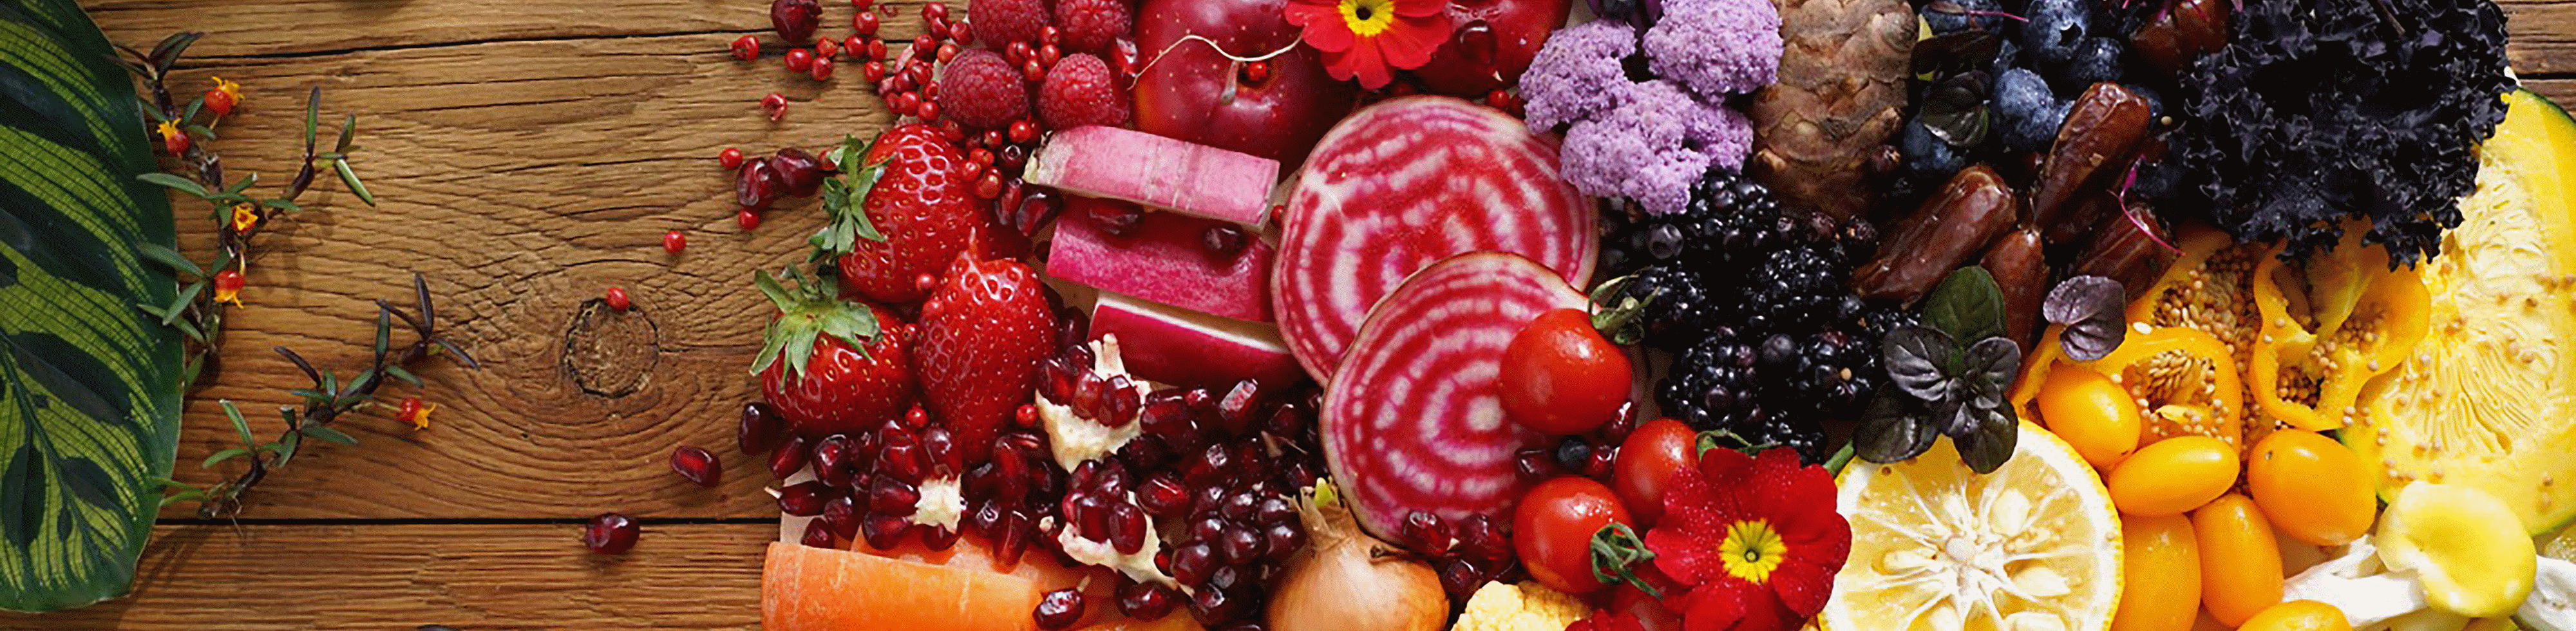 Image de légumes et de fruits colorés capturée à l'aide de l'objectif avec une haute résolution uniforme